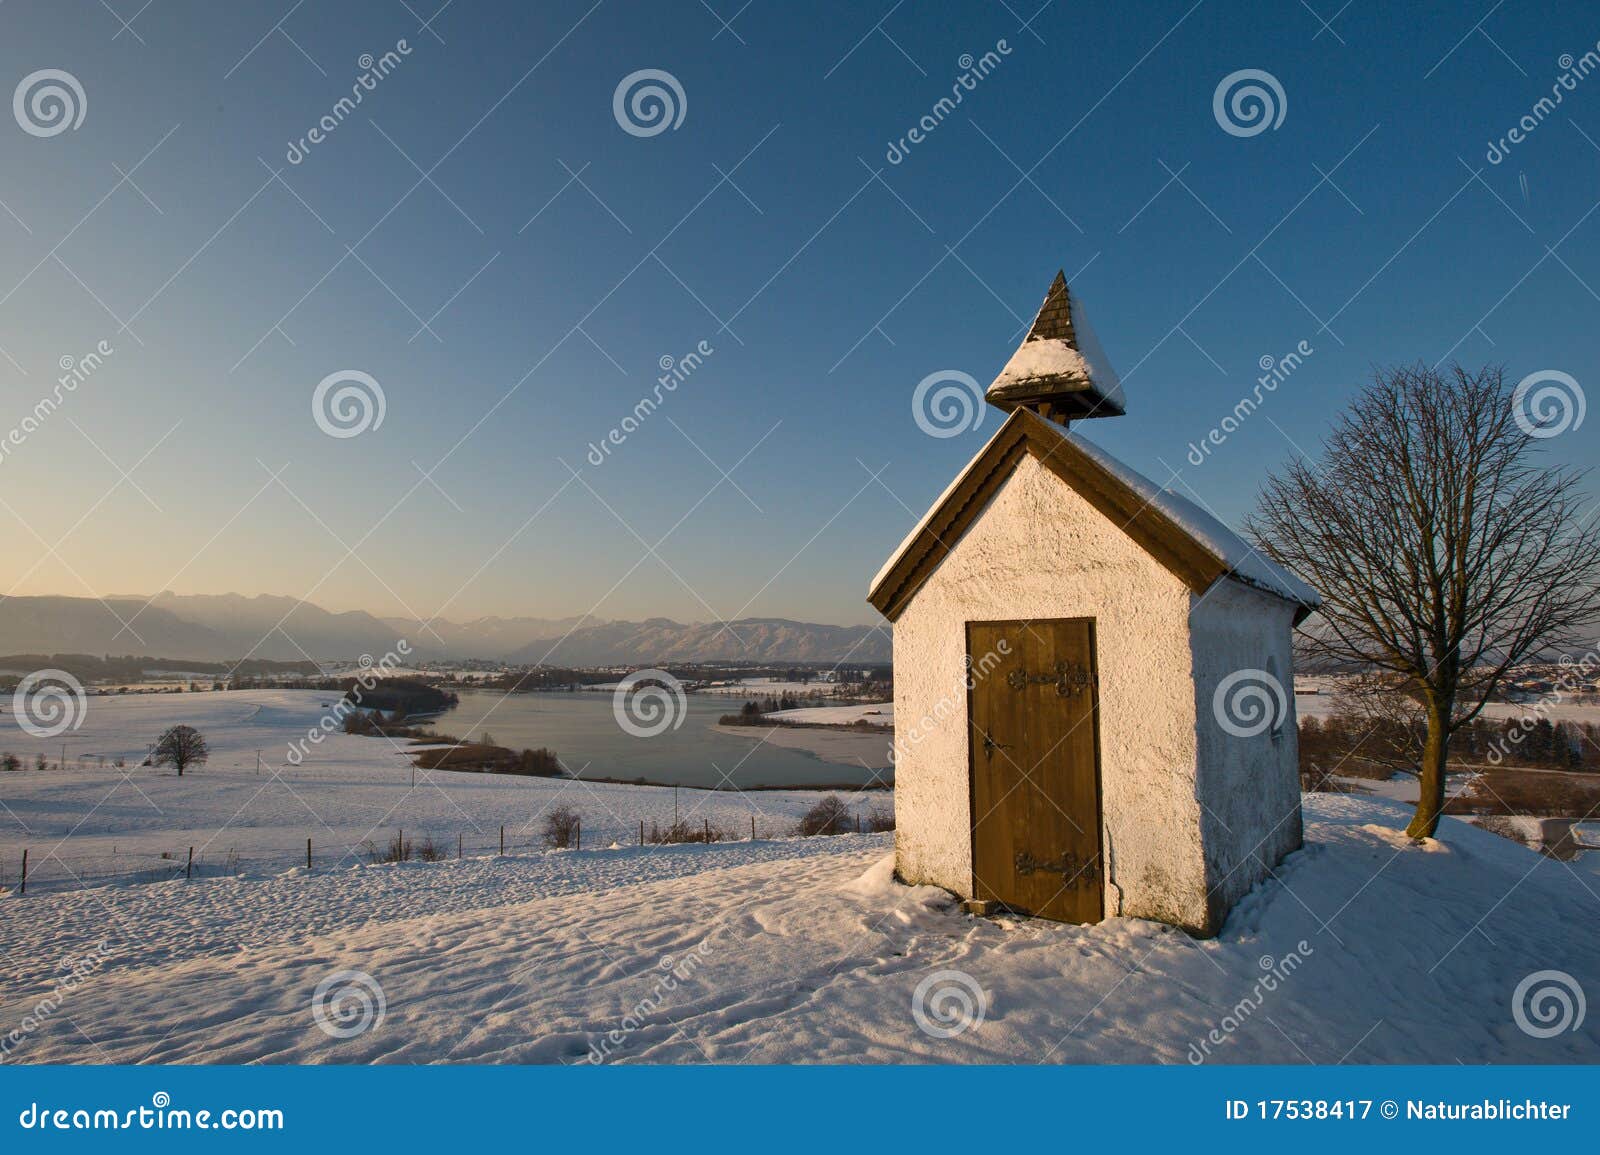 chapel in wintry landscape